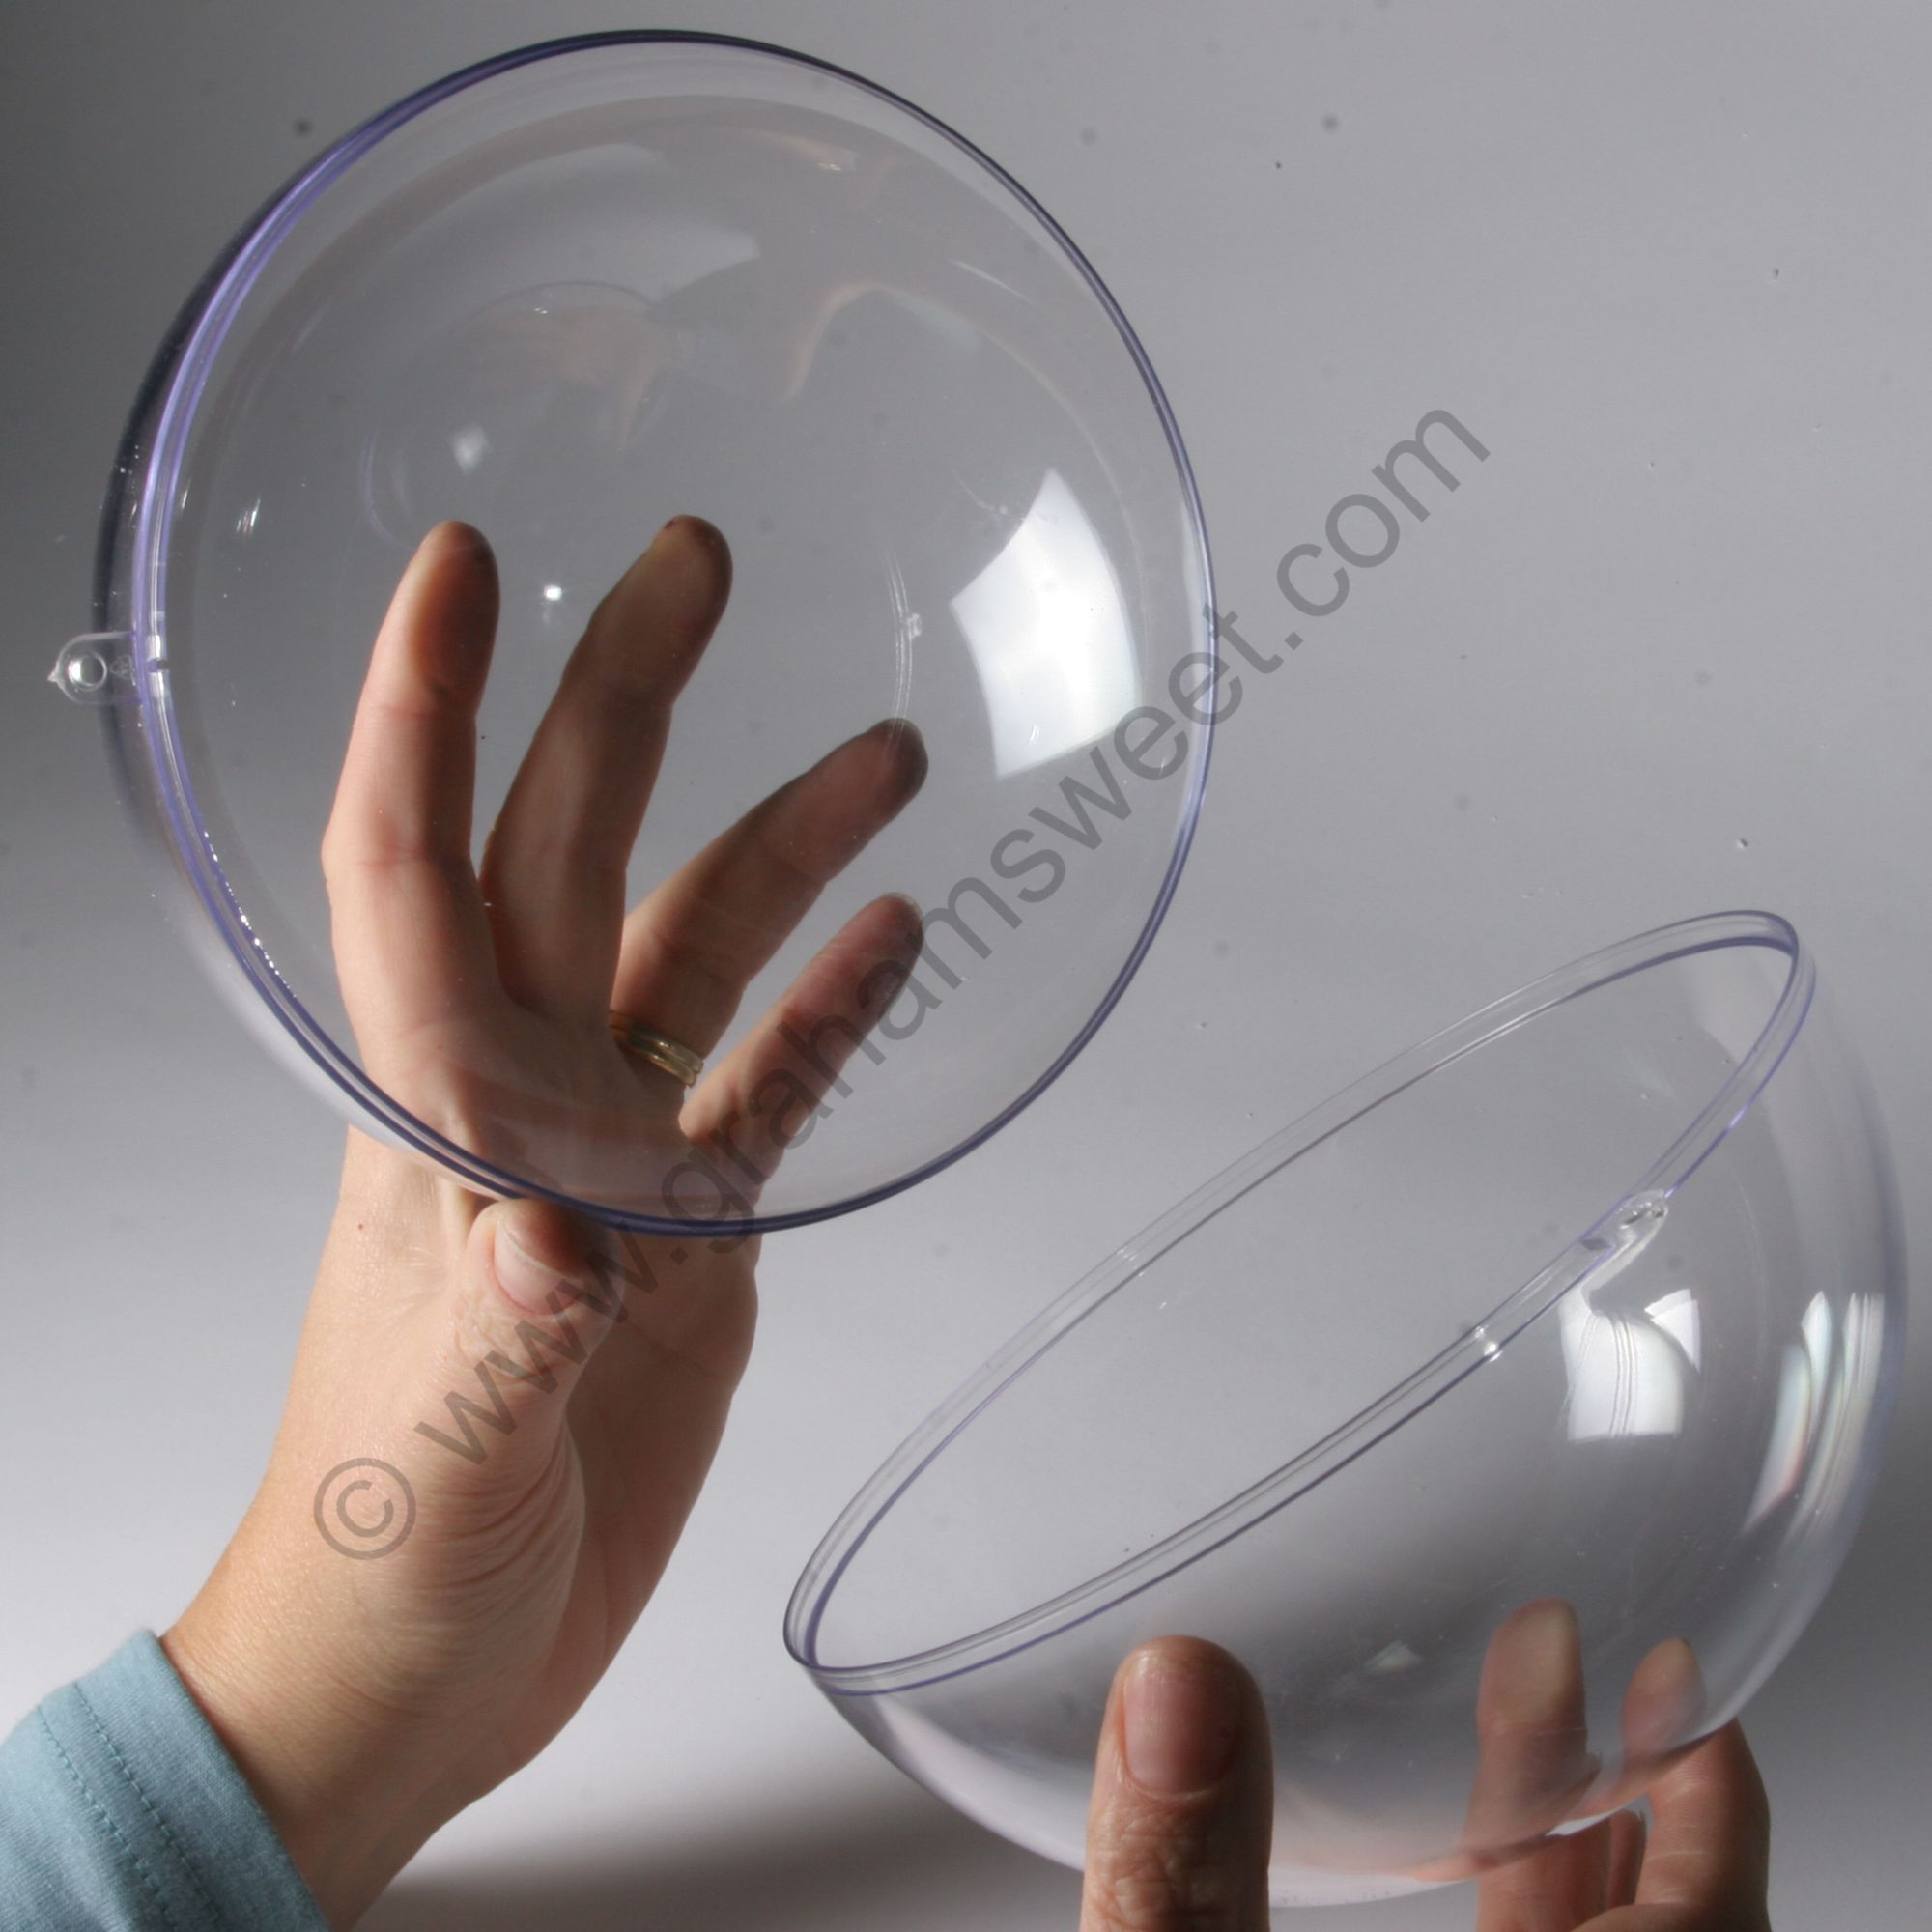 180mm diameter clear plastic ball